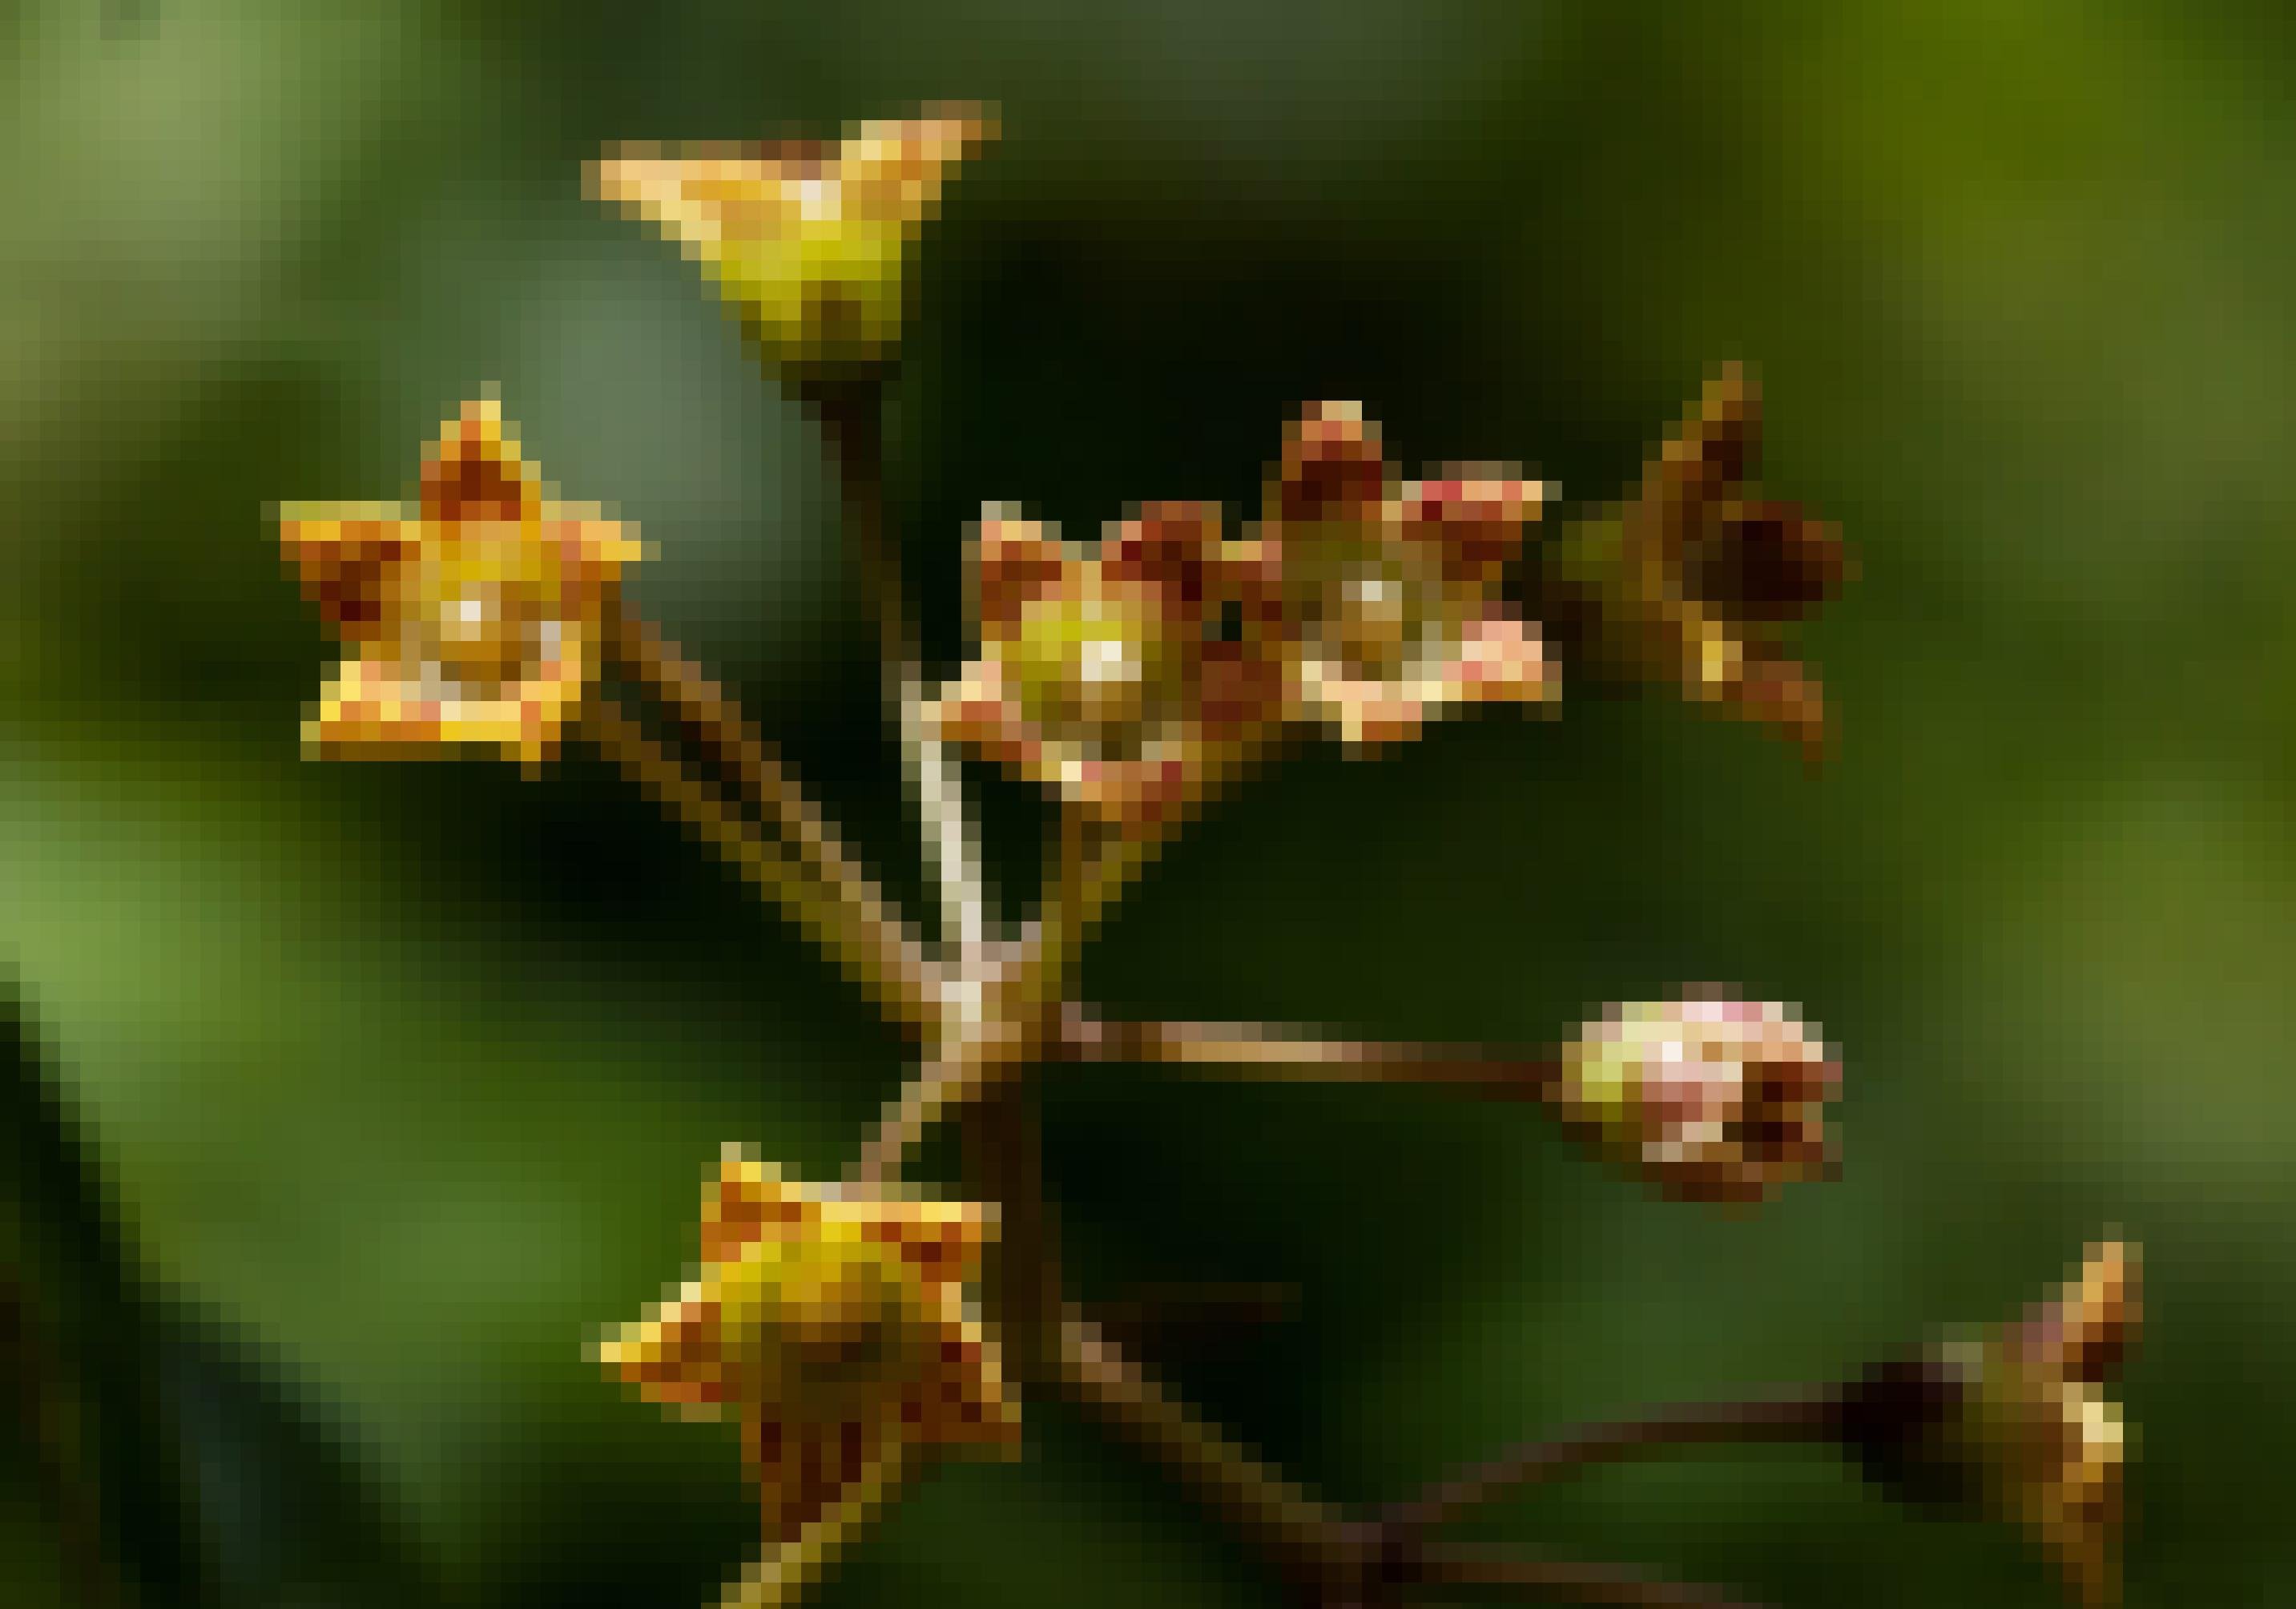 Grazile Pflanze mit braun-gelben Blüten.